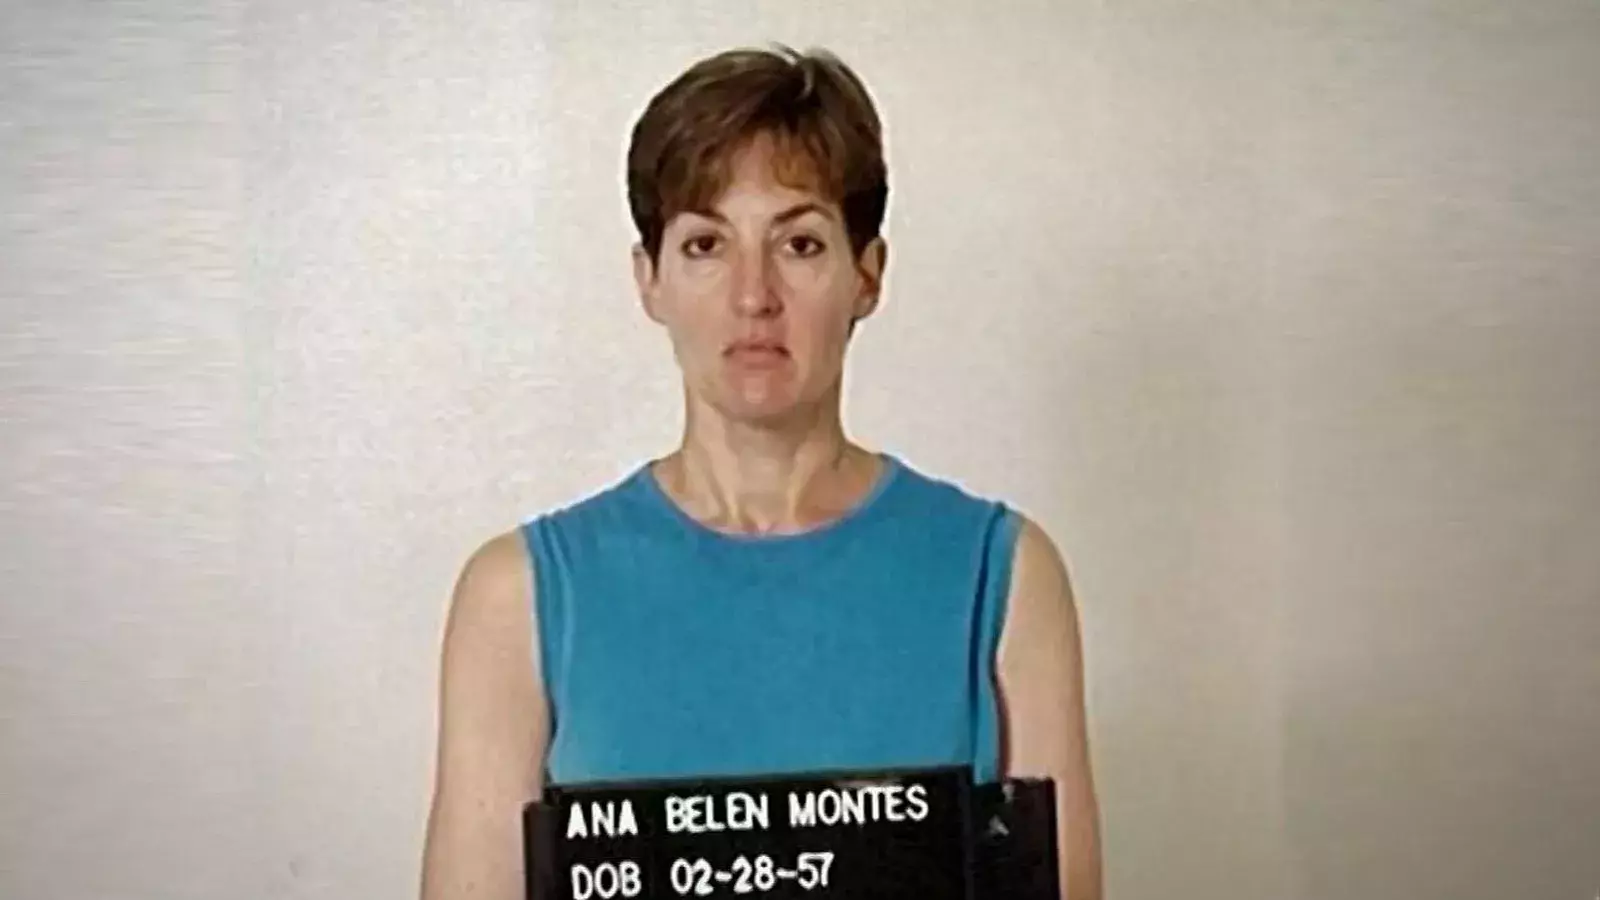 Liberan a la espía del régimen cubano Ana Belén Montes, tras 22 años en prisión